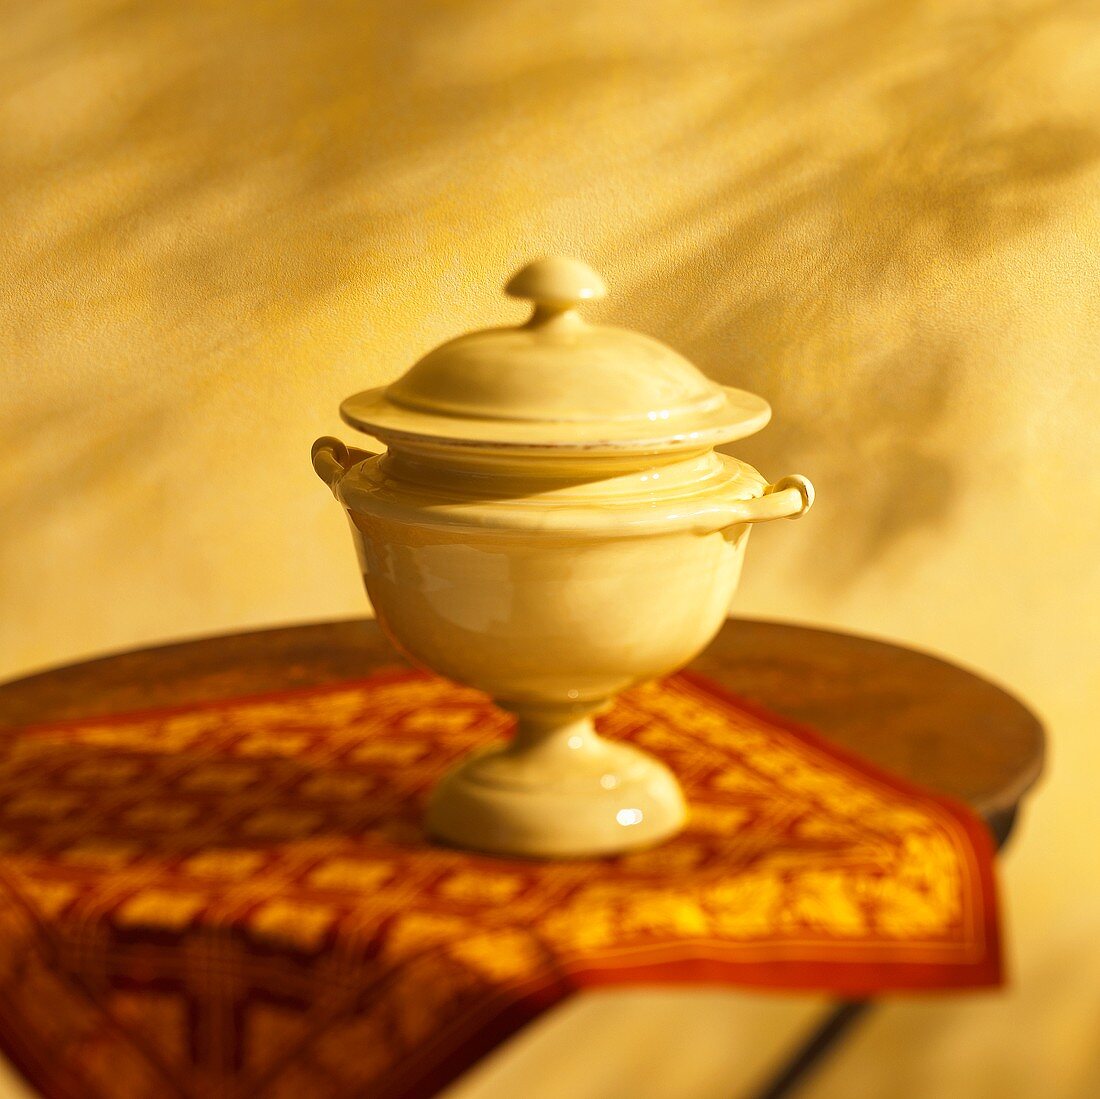 A porcelain urn